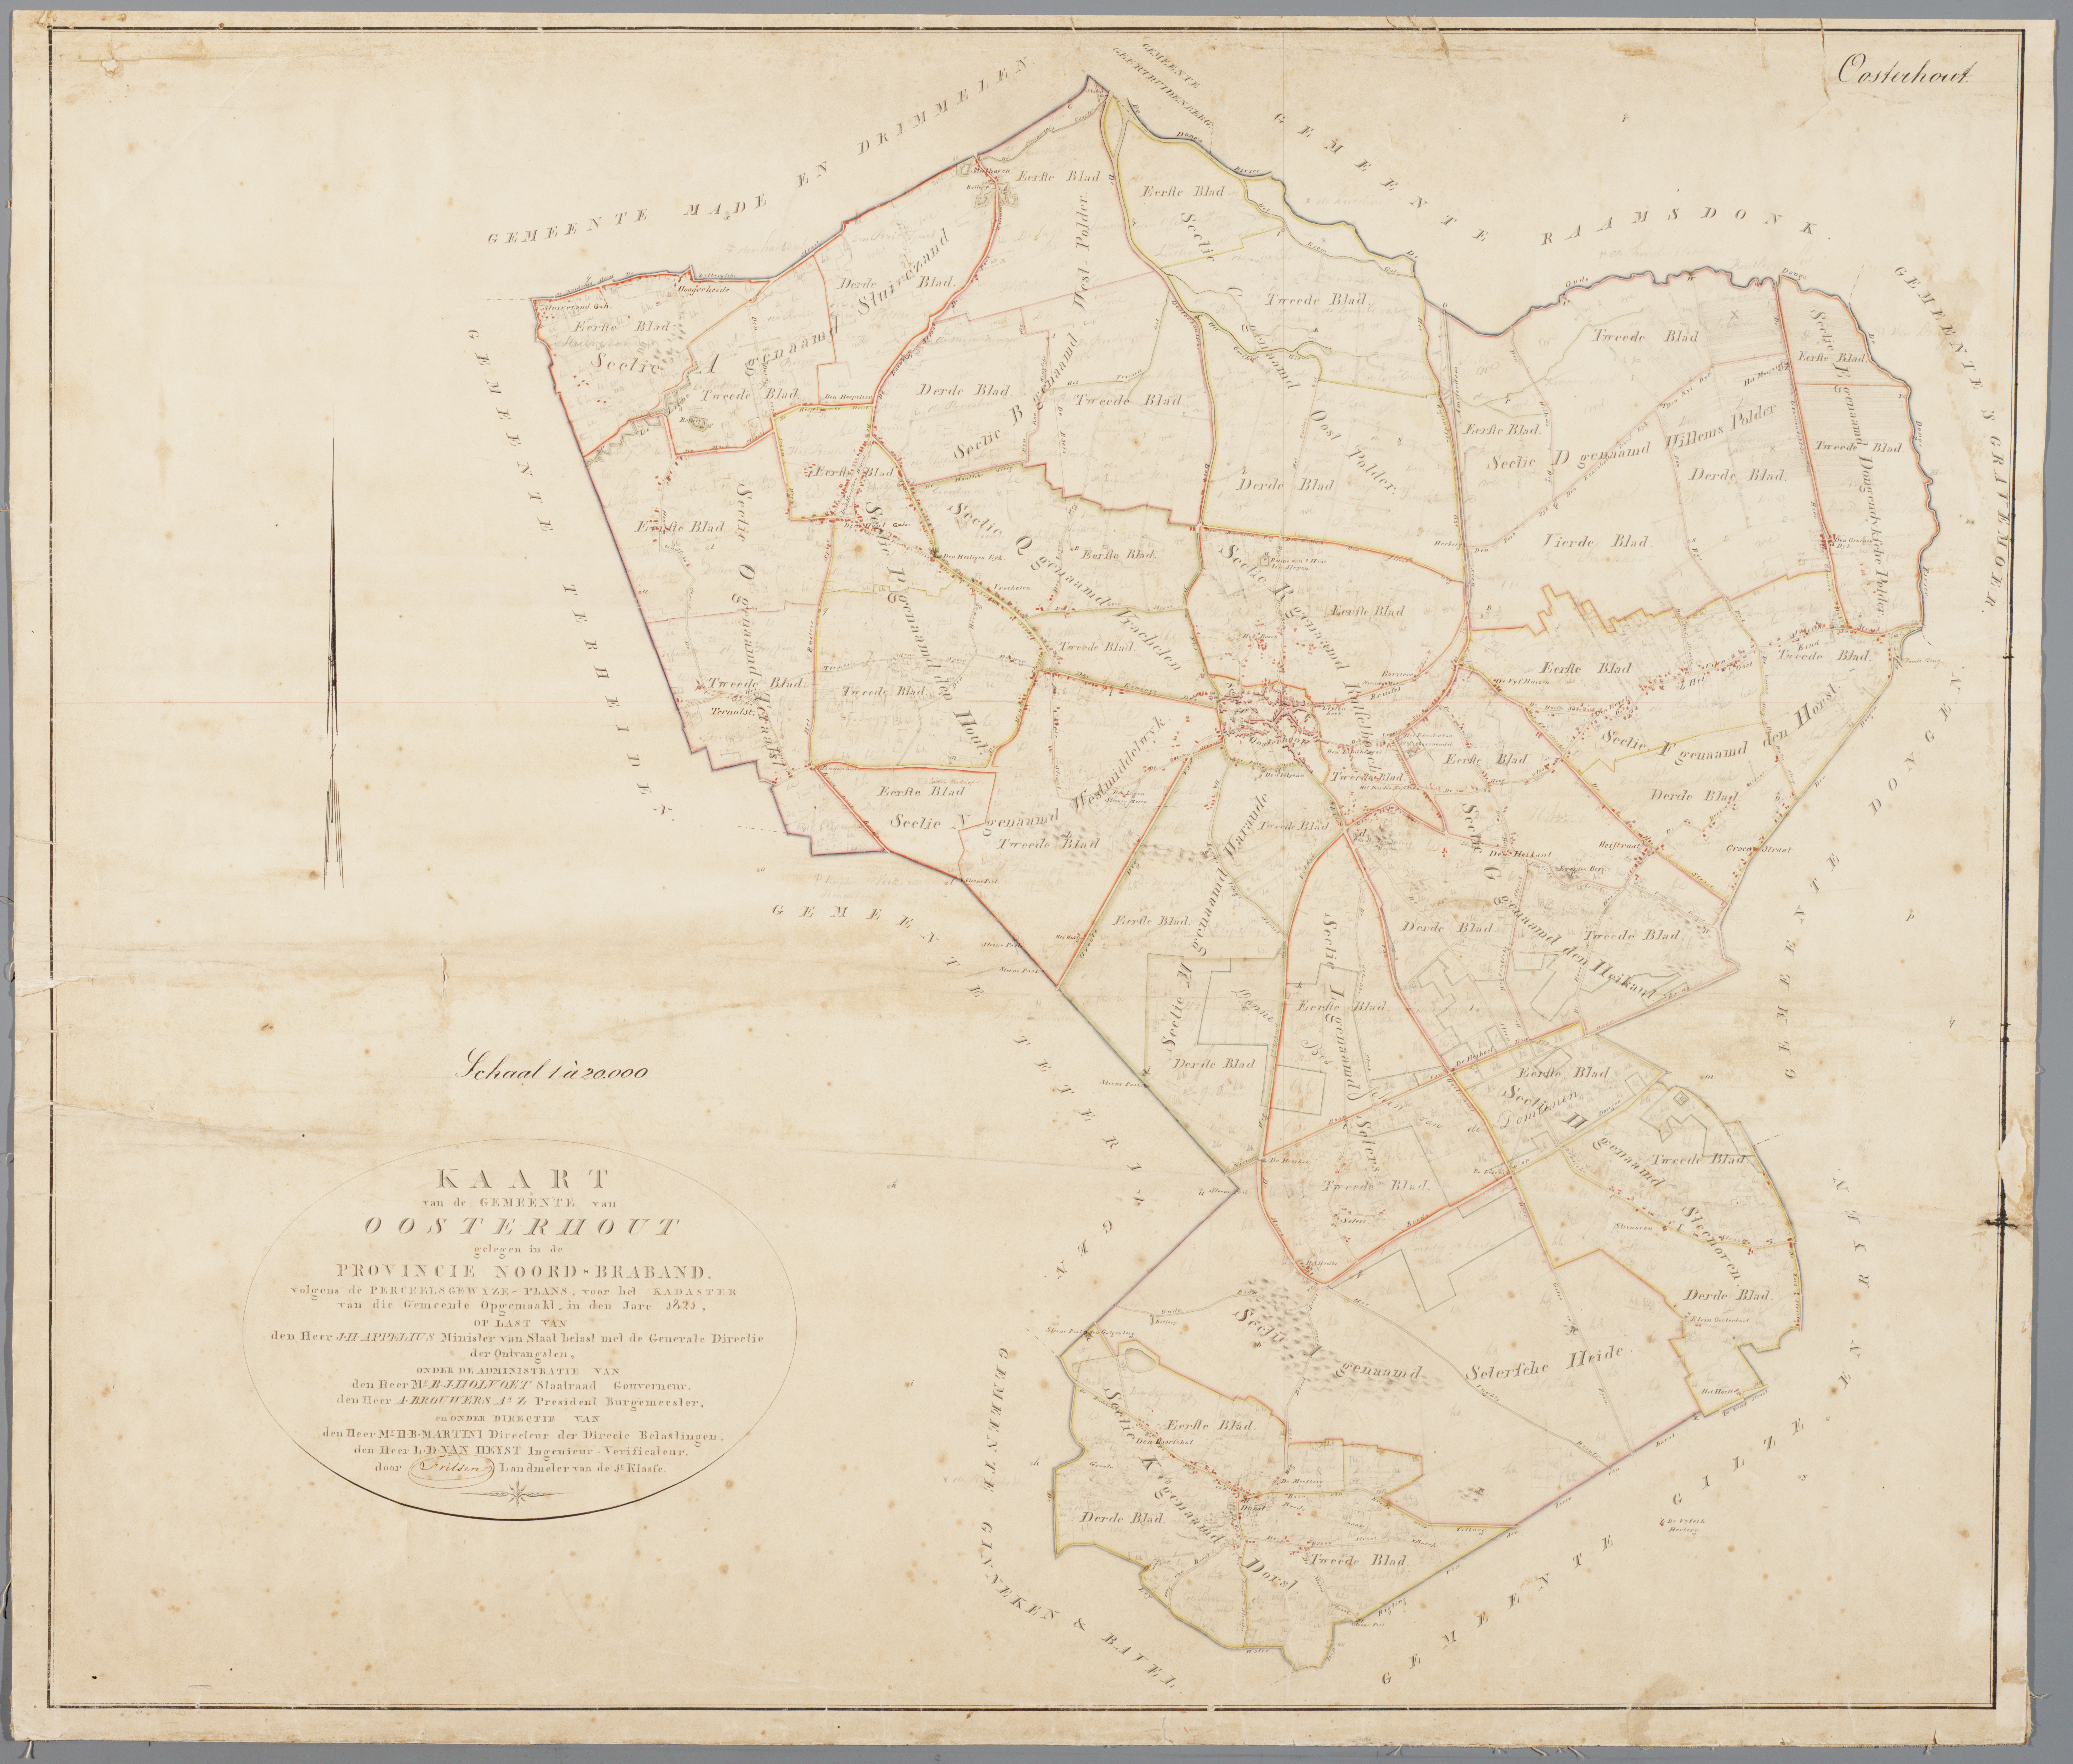 oosterhout_kadastrale_kaart_1811-1832.jpg